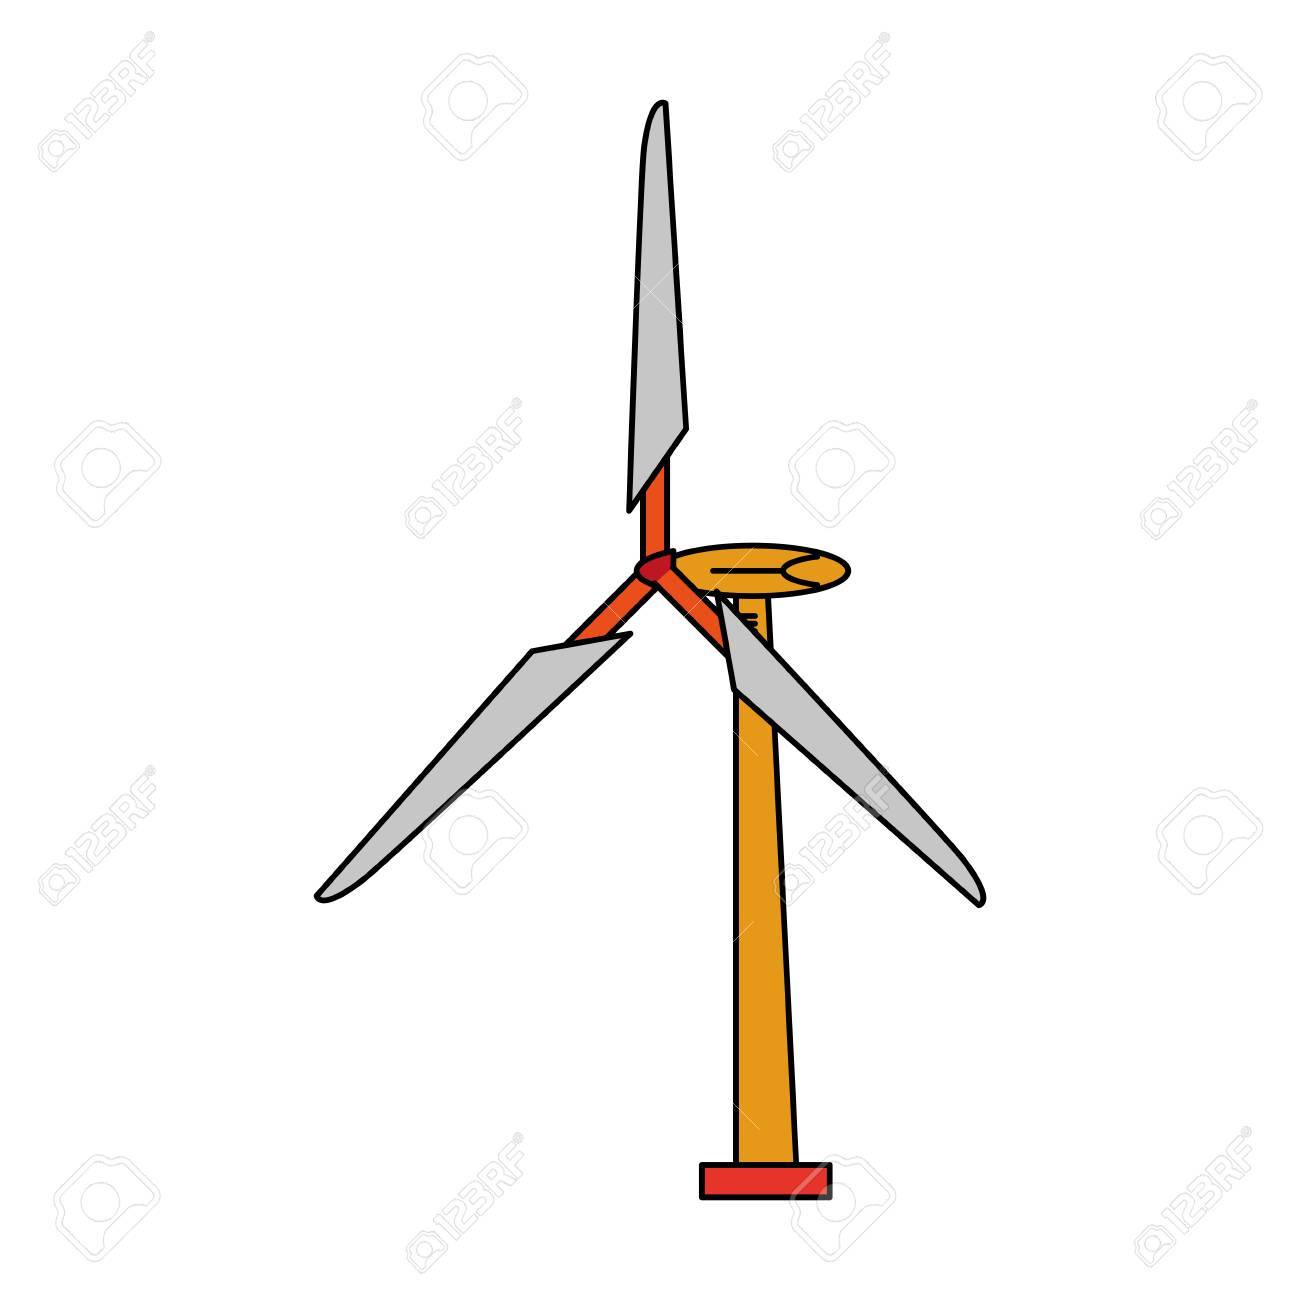 Wind turbine icon Royalty Free Vector Image - VectorStock